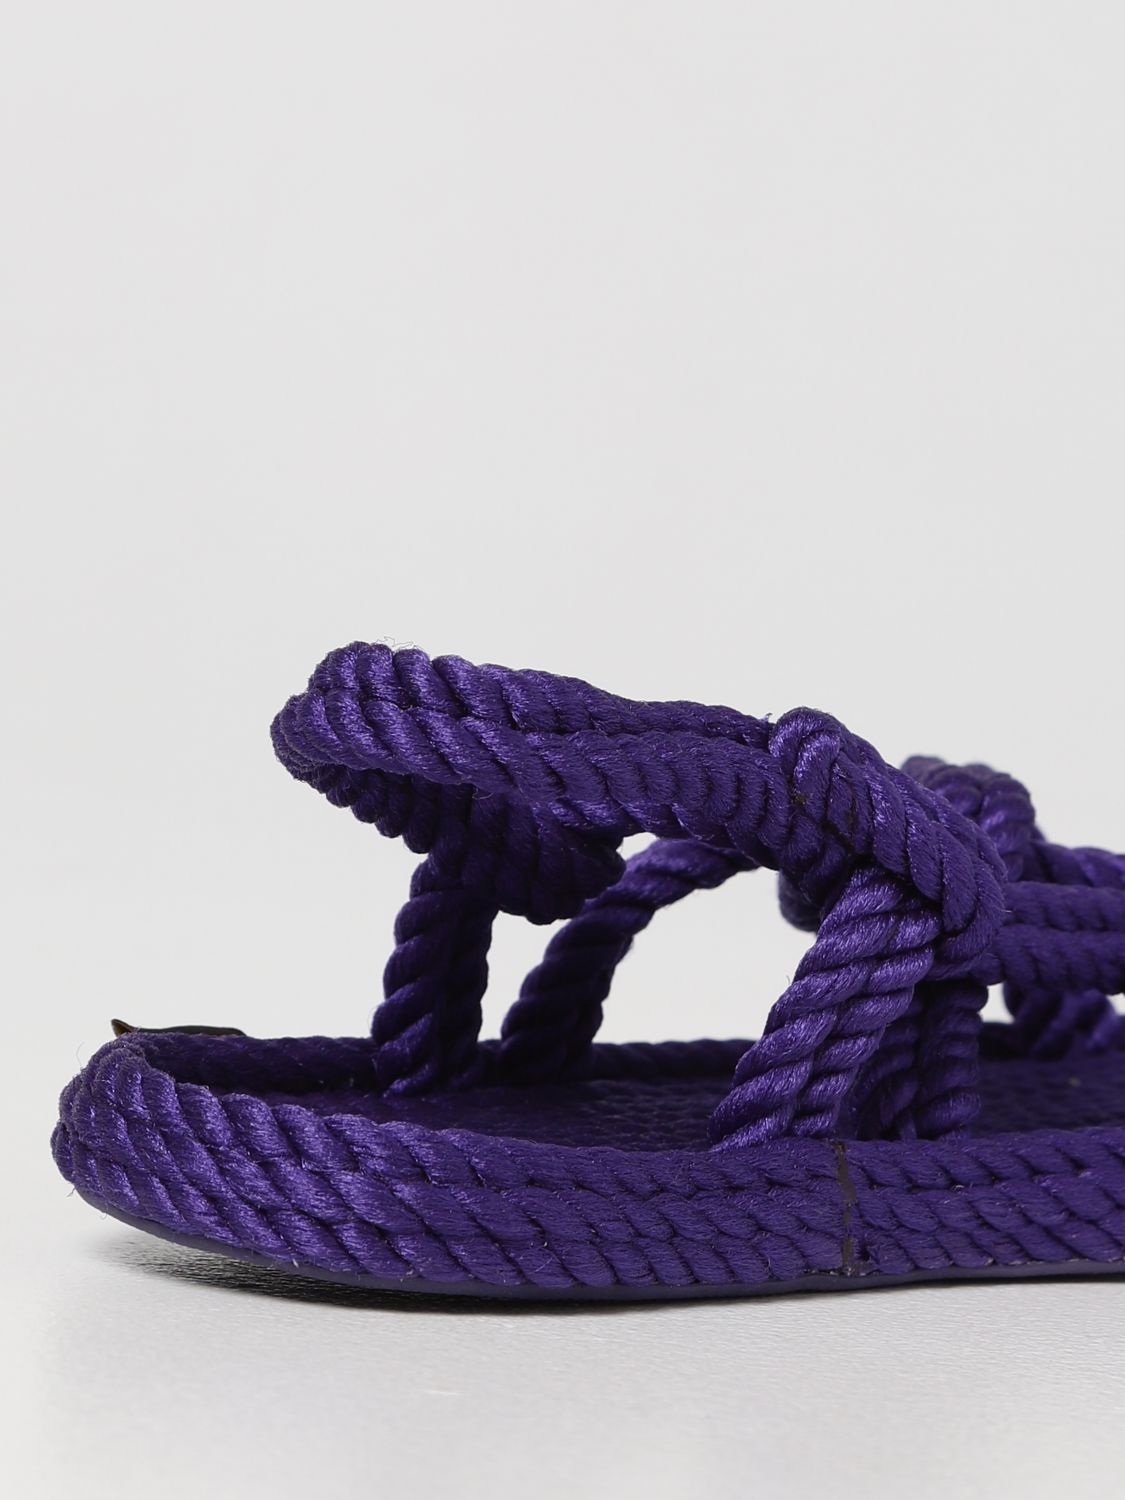 Flache Sandalen Bohonomad: Schuhe damen Bohonomad violett 3